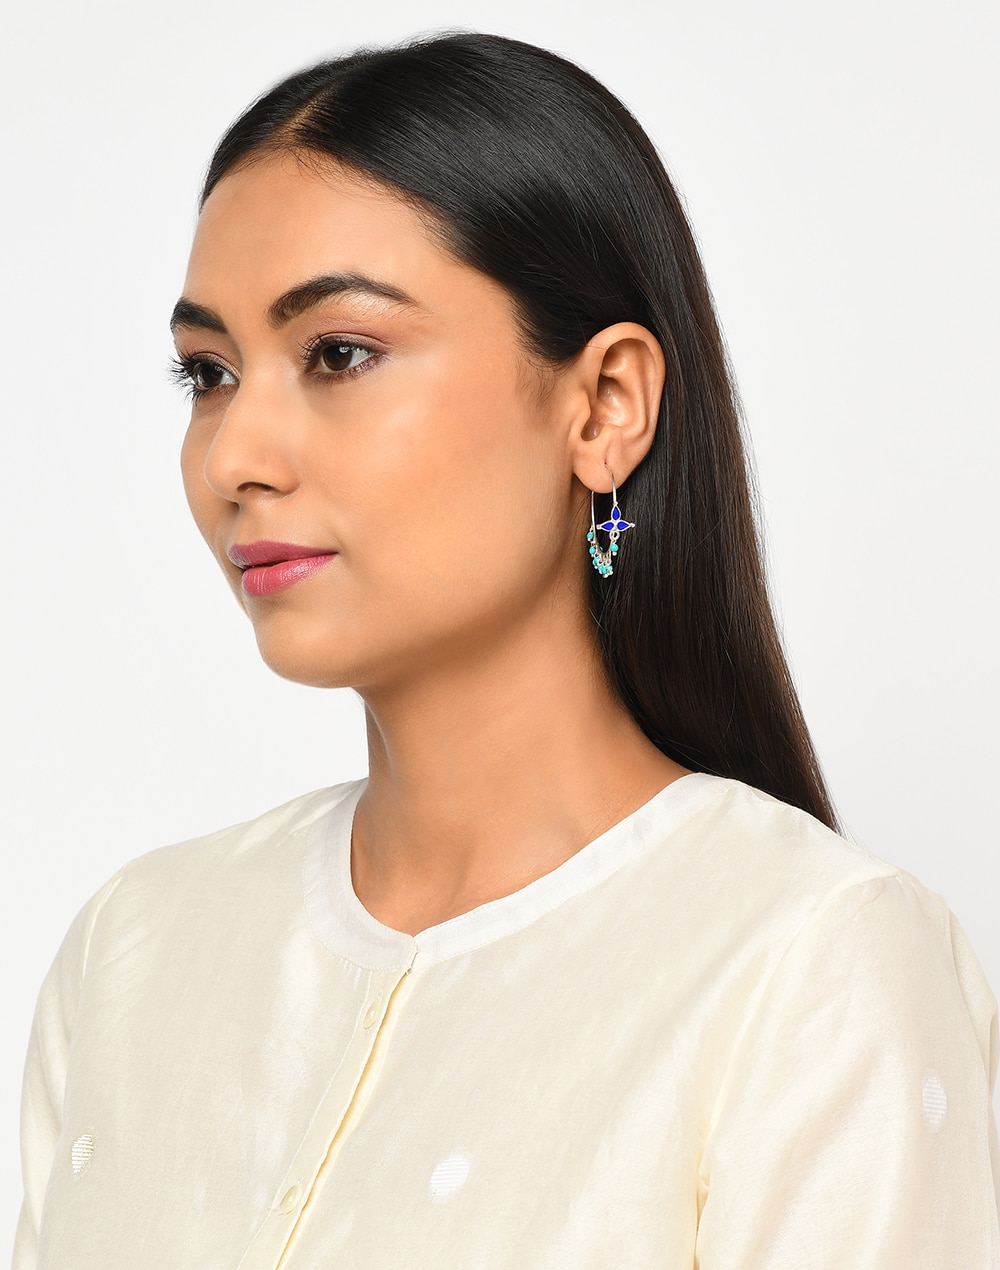 Silver Bali Earrings